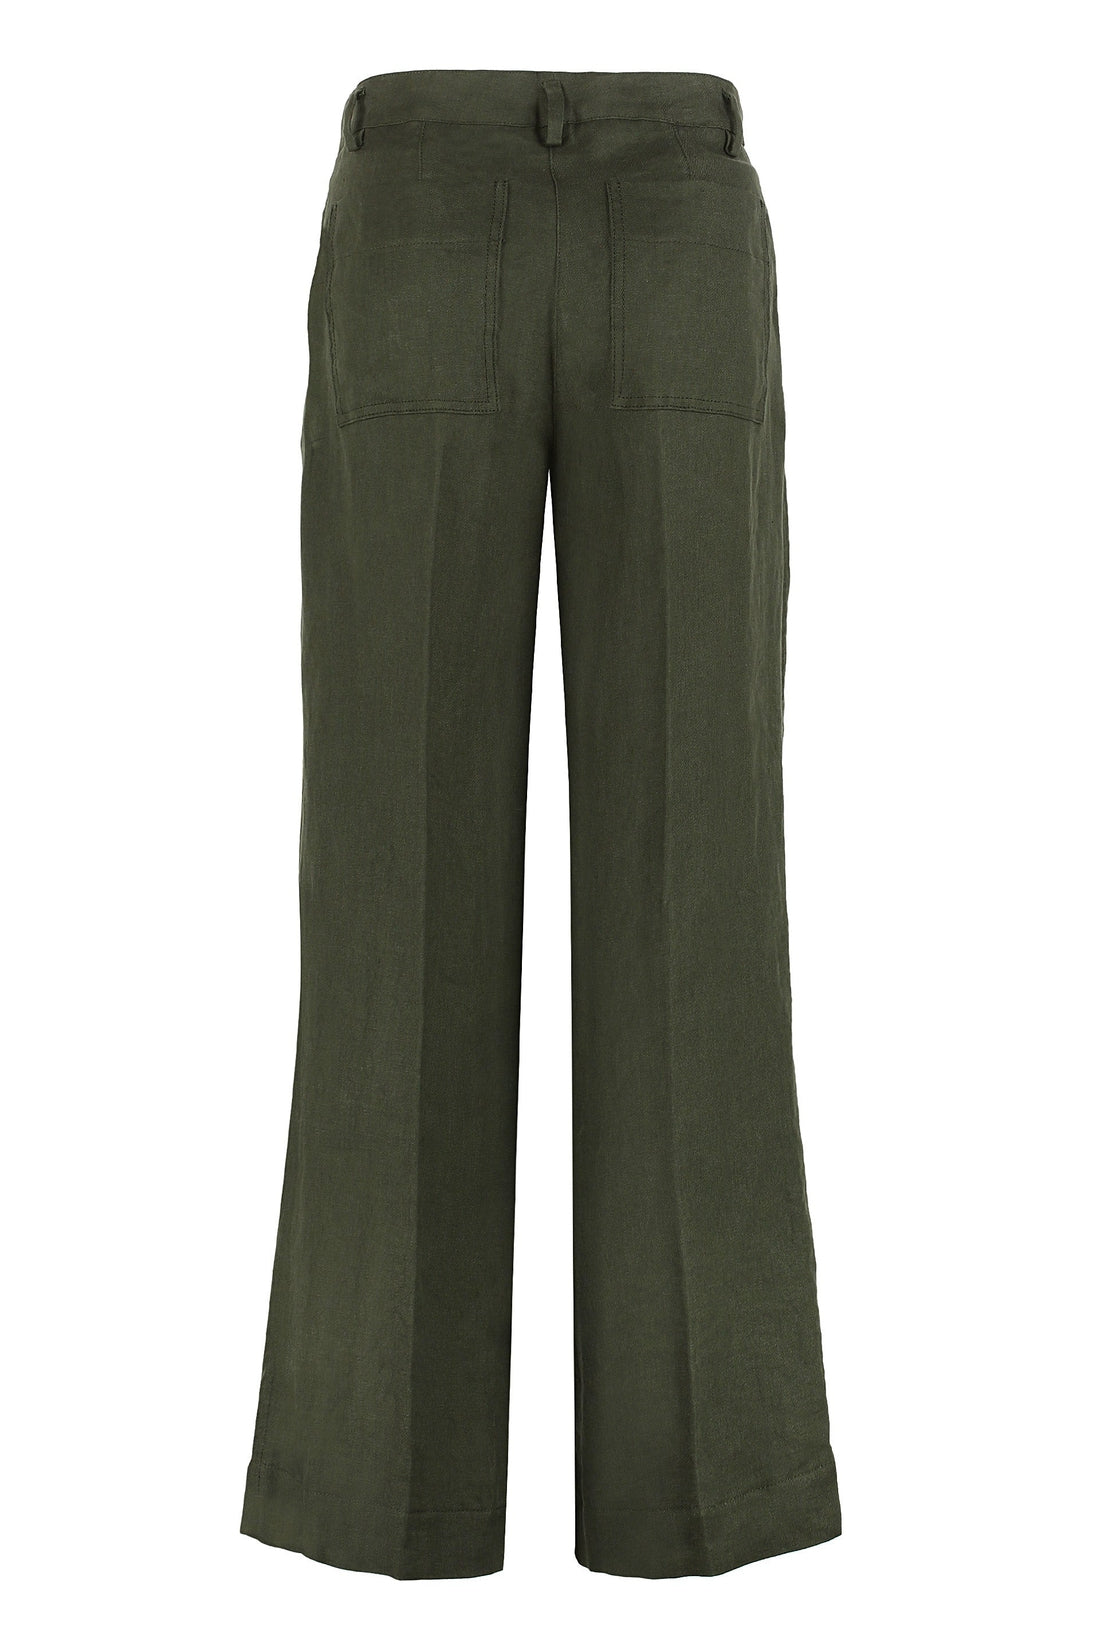 Parosh-OUTLET-SALE-Wide-leg trousers-ARCHIVIST